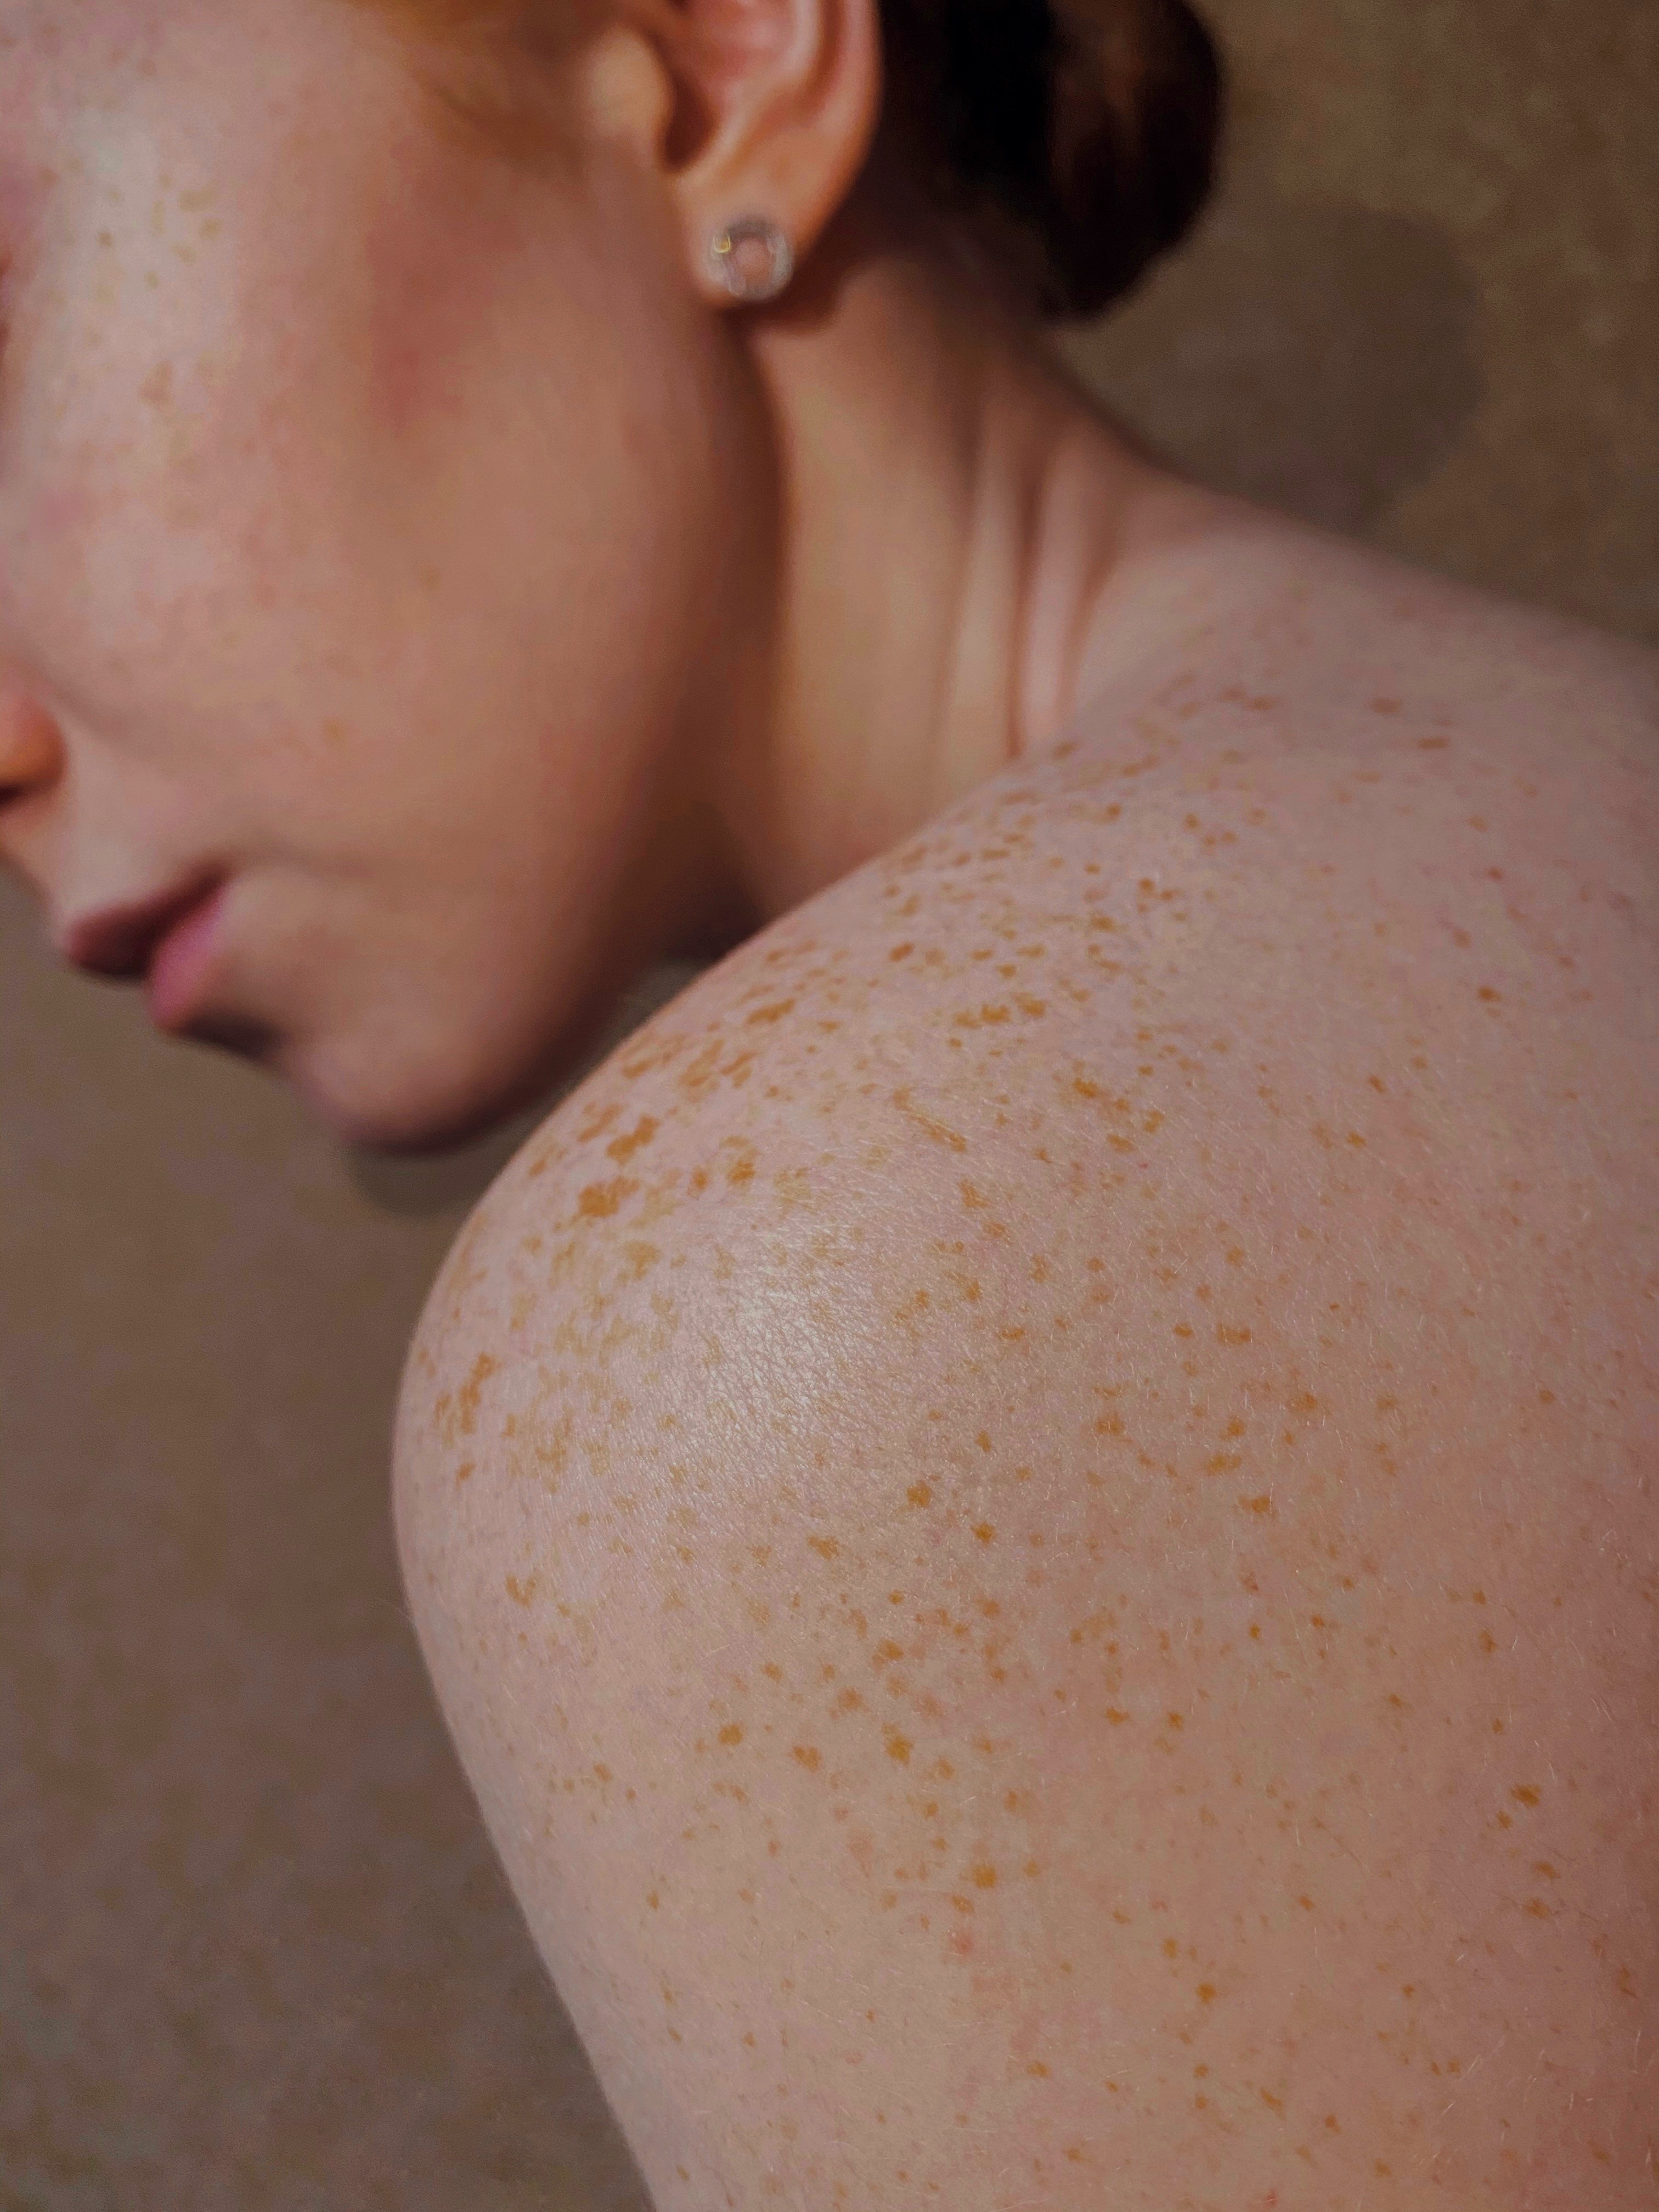 zdjęcie kobiety odwróconej plecami, widzimy jej gołą skórę na ramieniu pełną piegów